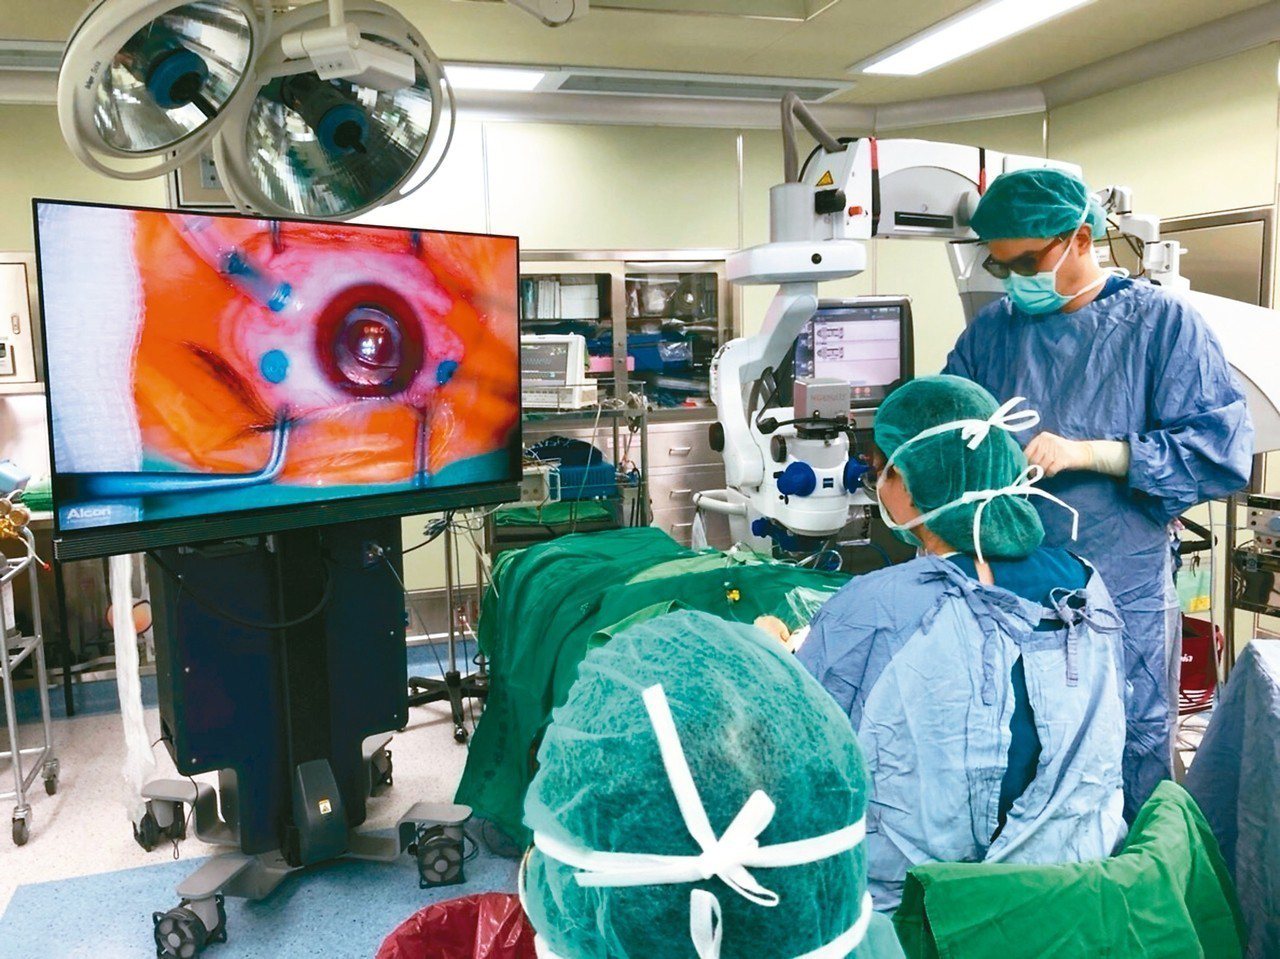 3D立體影像眼部手術，讓醫師不必彎腰低頭開刀，且能將立體景深畫面呈現於55吋大螢幕上，使眼部手術更安全。